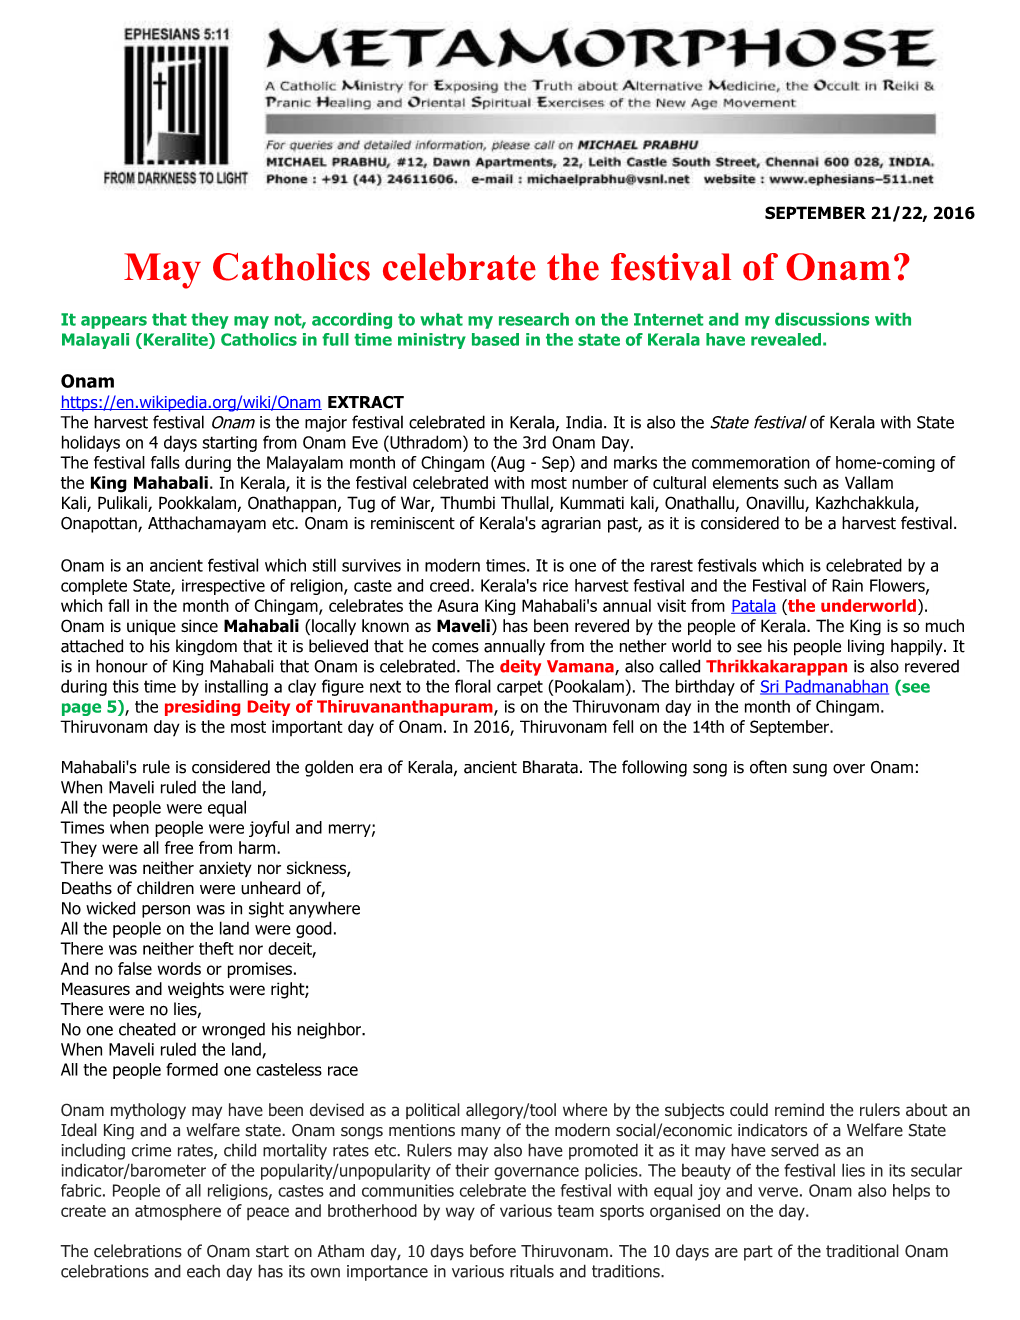 May Catholics Celebrate the Festival of Onam?